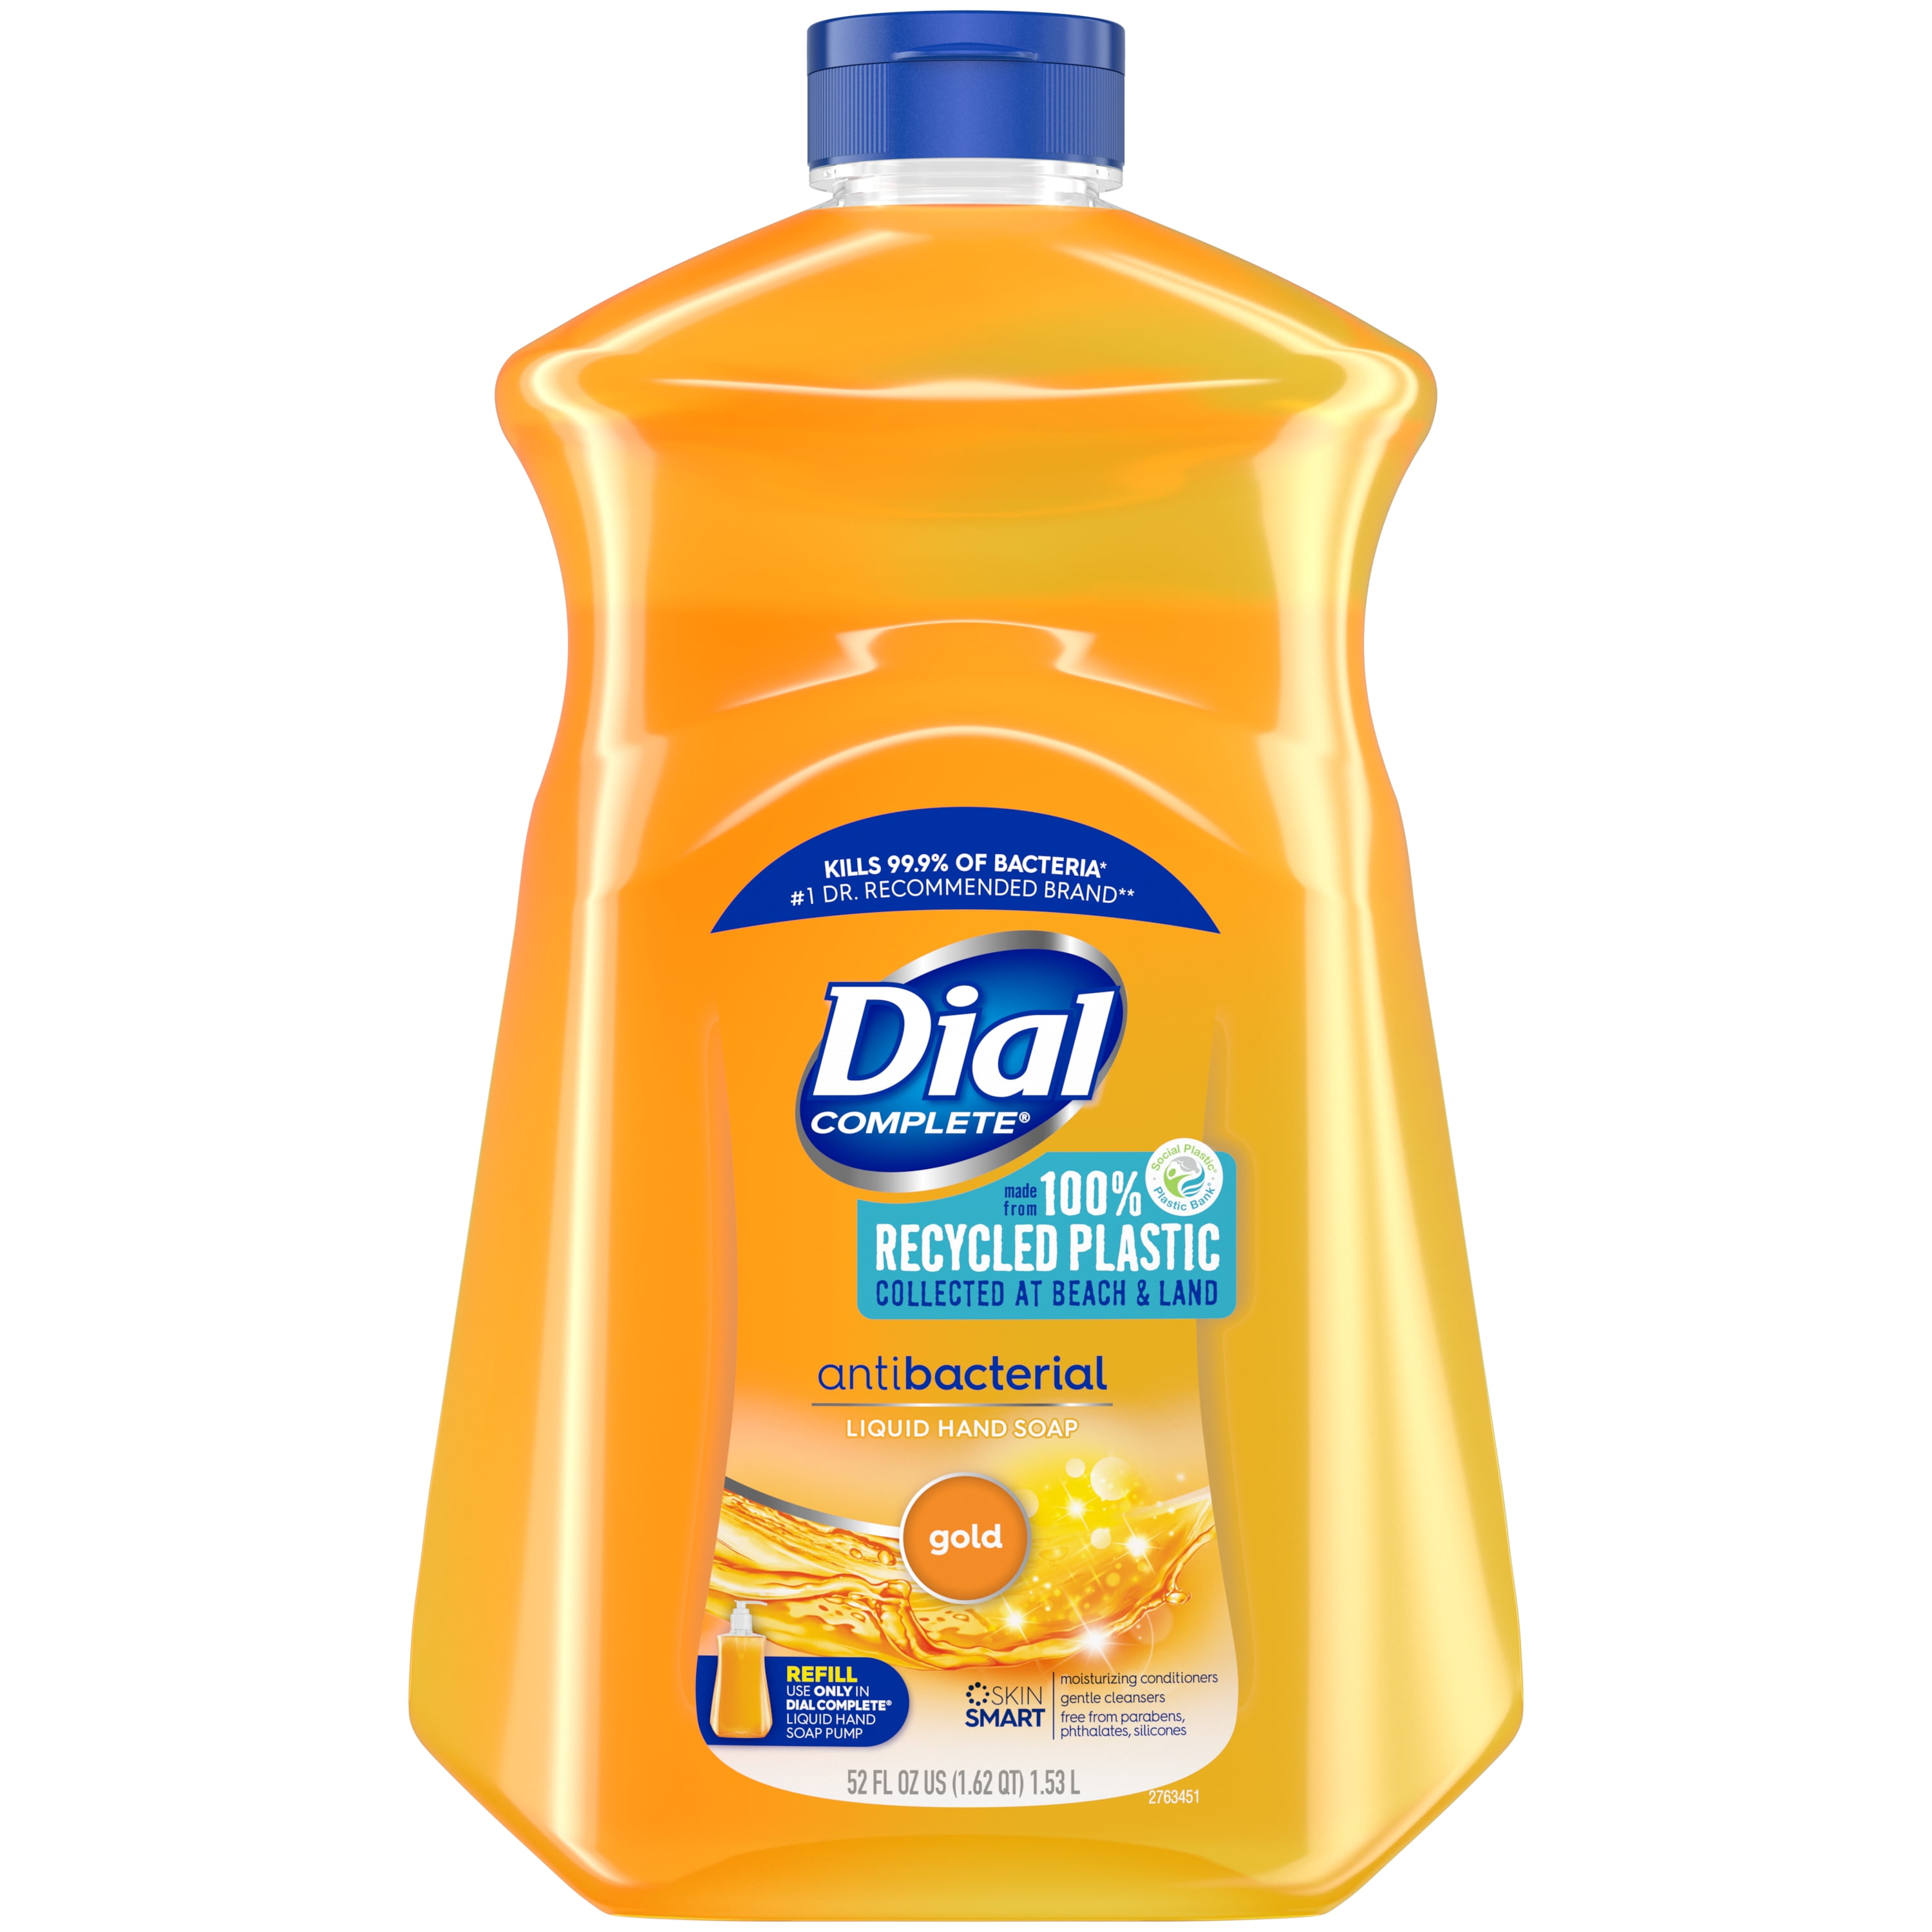 Dial Complete Antibacterial Liquid Hand Soap Refill, Gold, 52 fl oz